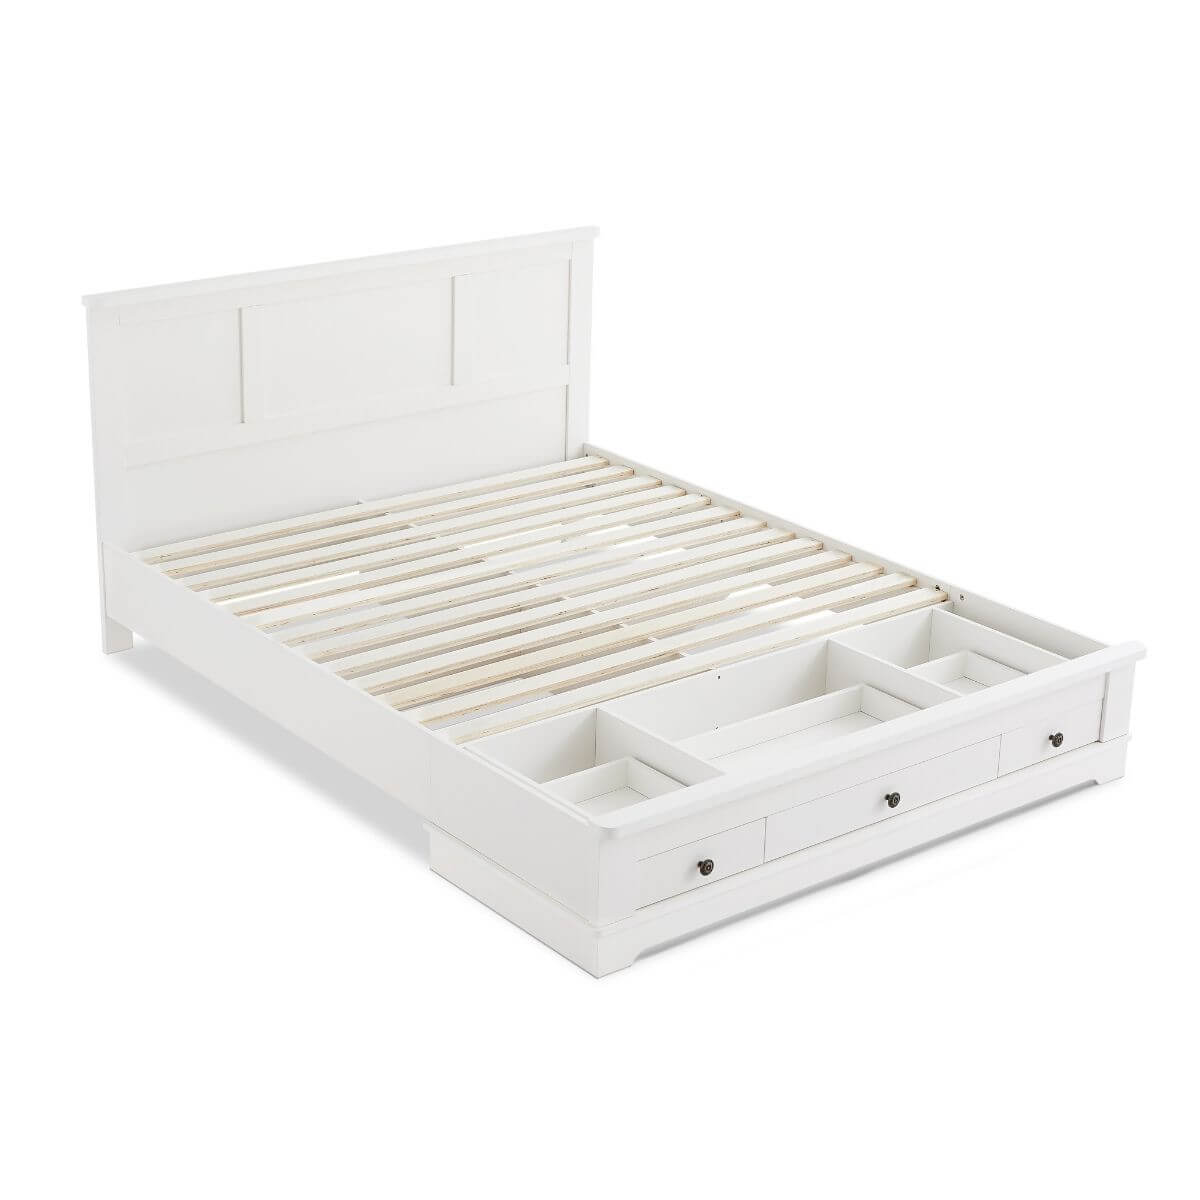 Margaux White Coastal Lifestyle Bedframe with Storage Drawers King-Upinteriors